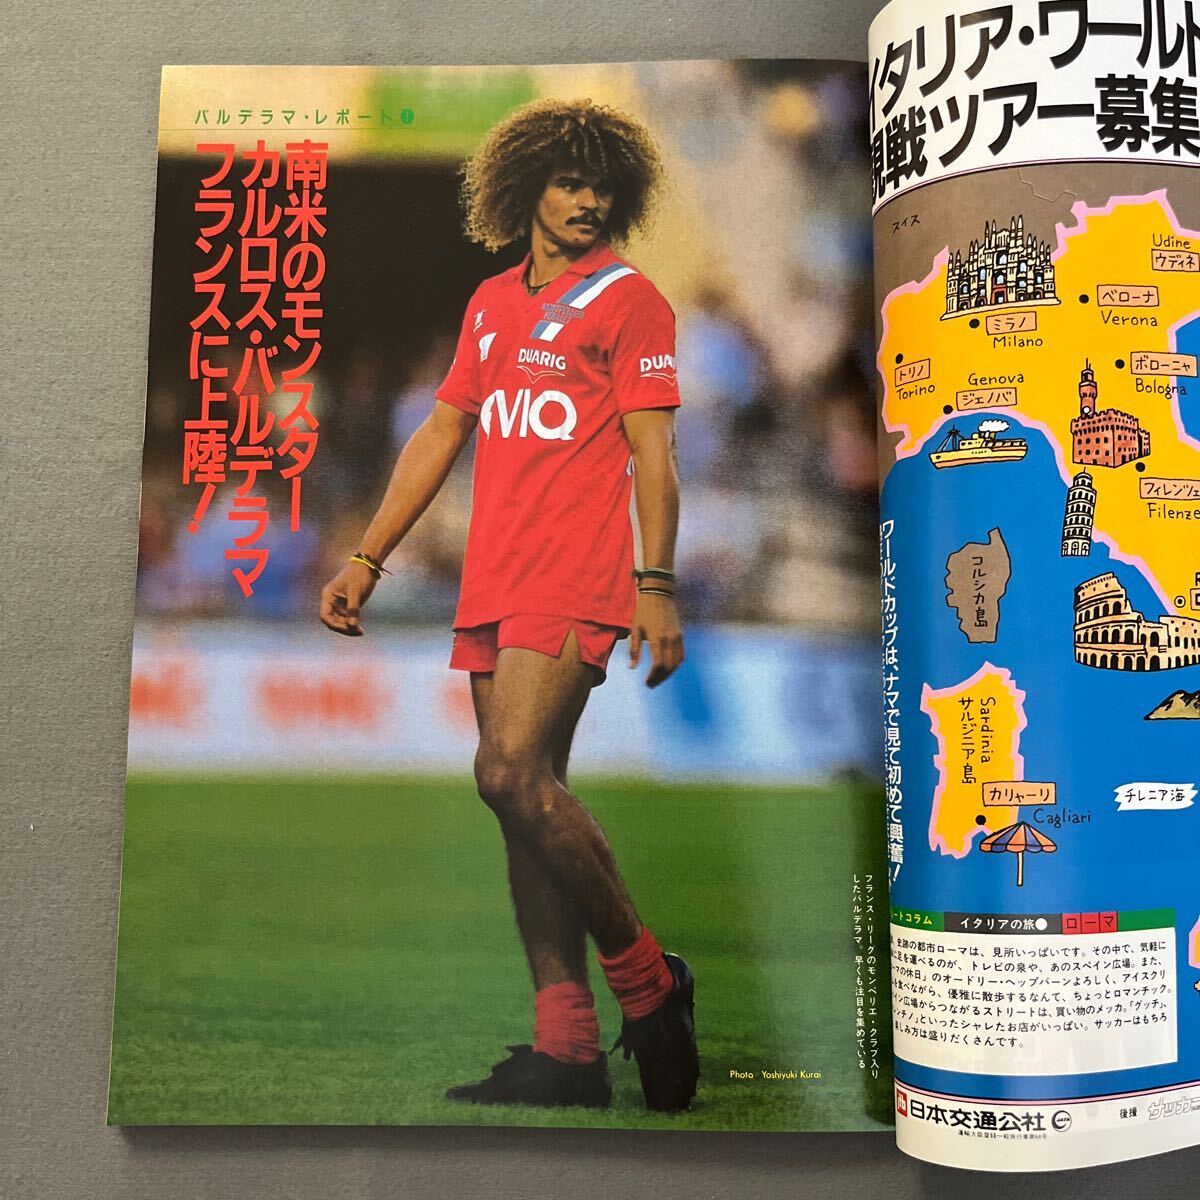  soccer magazine 10 month number * Showa era 63 year 10 month 1 day issue *karu Roth * bar te llama *ma Rado na*na poly- * Xerox * super soccer \'88